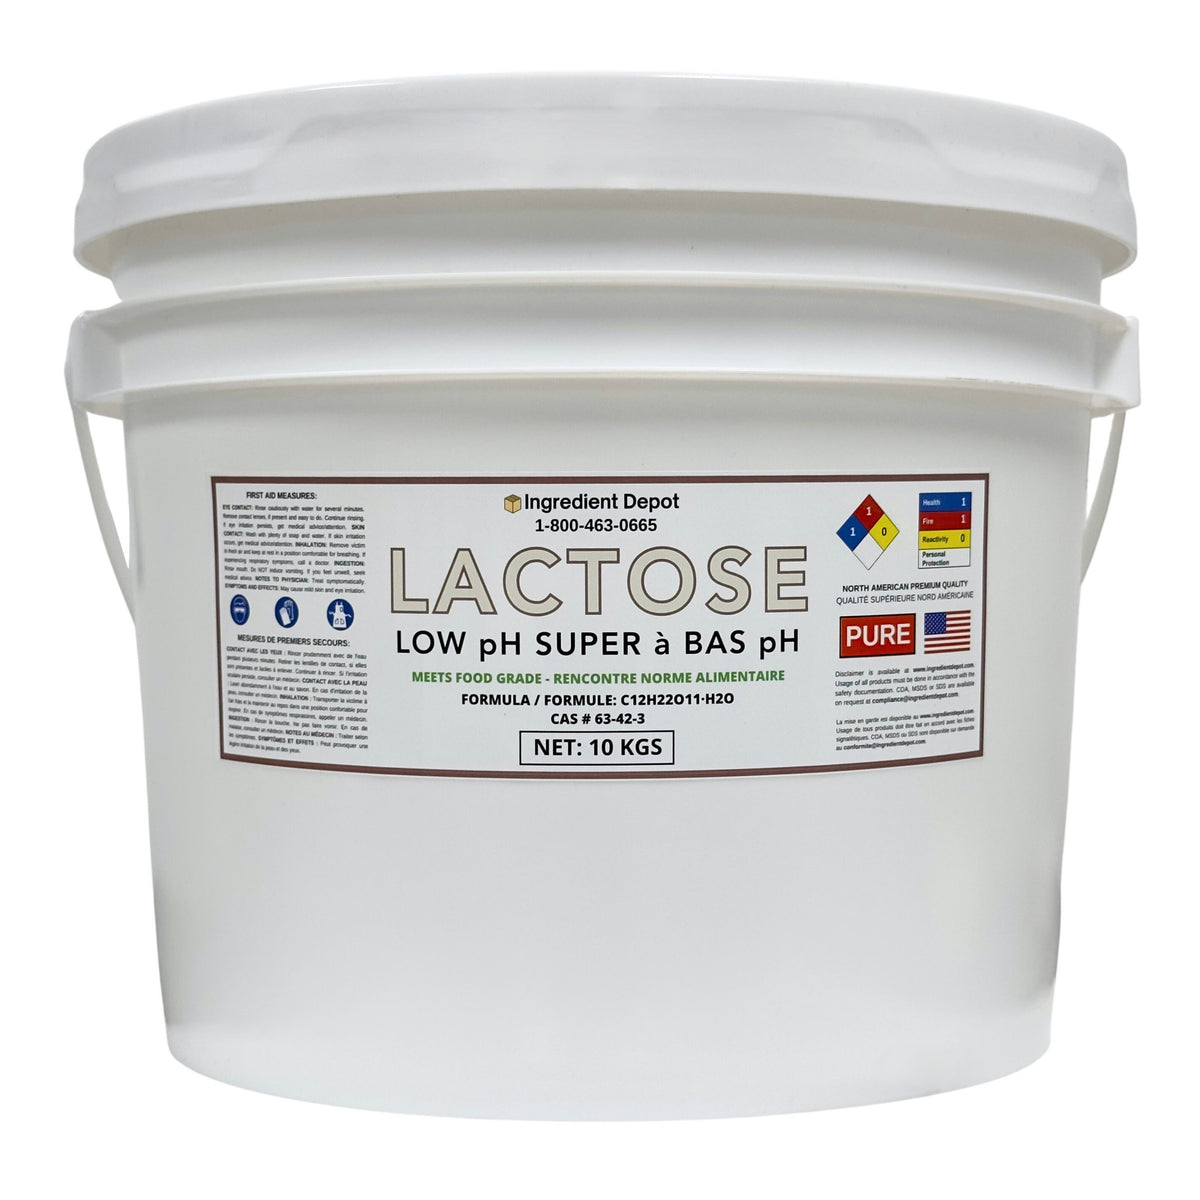 Lactose Super, Low pH, Food Grade 10 kgs